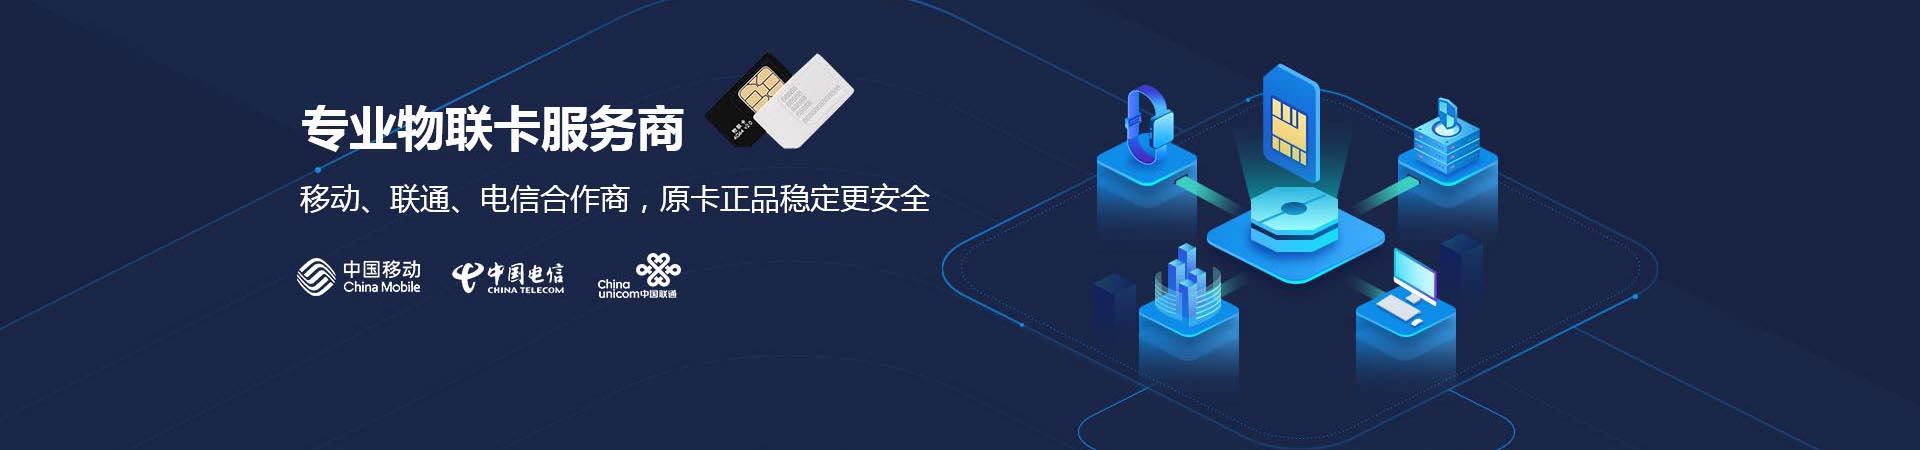 物联卡是中国移动基于公众物联网，面向物联网用户提供的移动通信接入业务